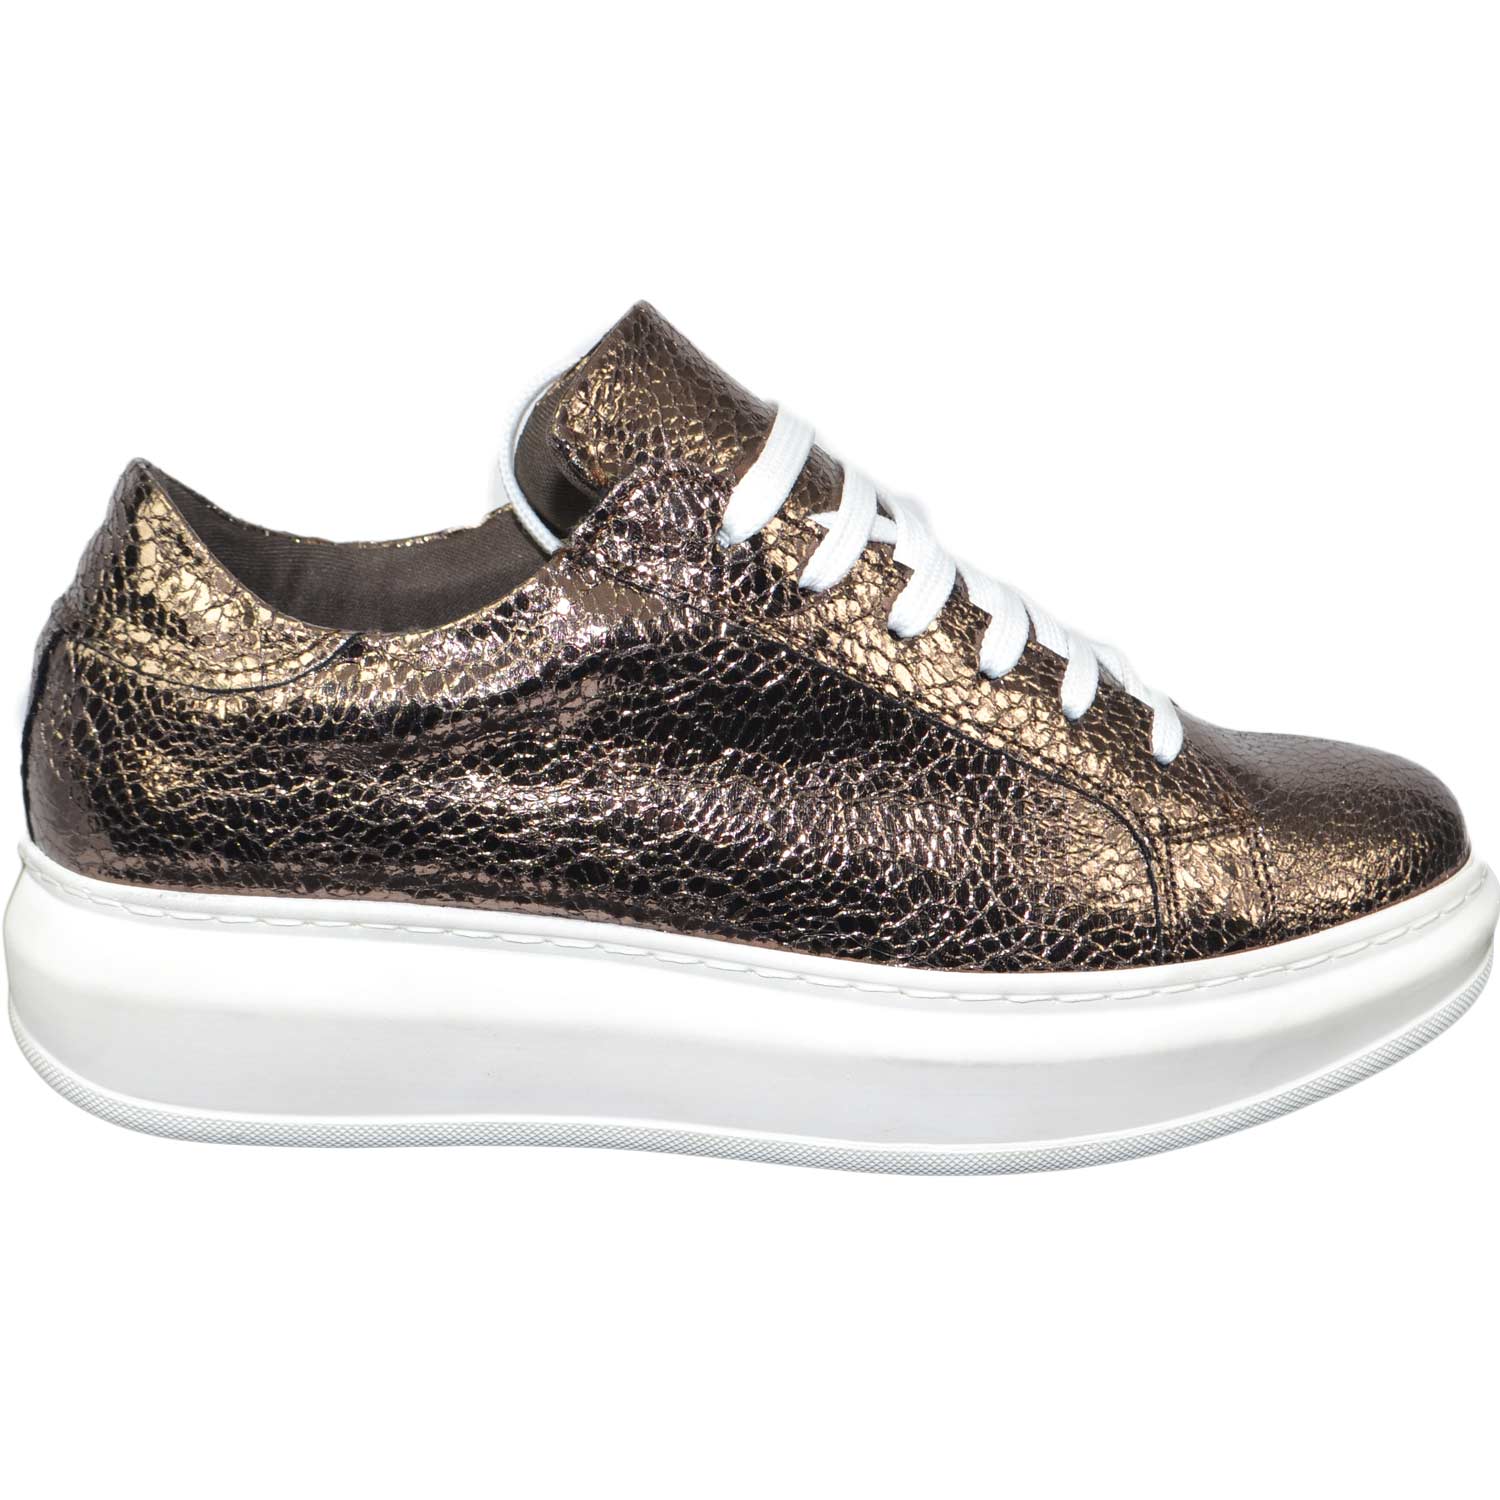 sneakers scarpe donna sportivo ginnico vera pelle made in italy bronzo bottolato moda glamour